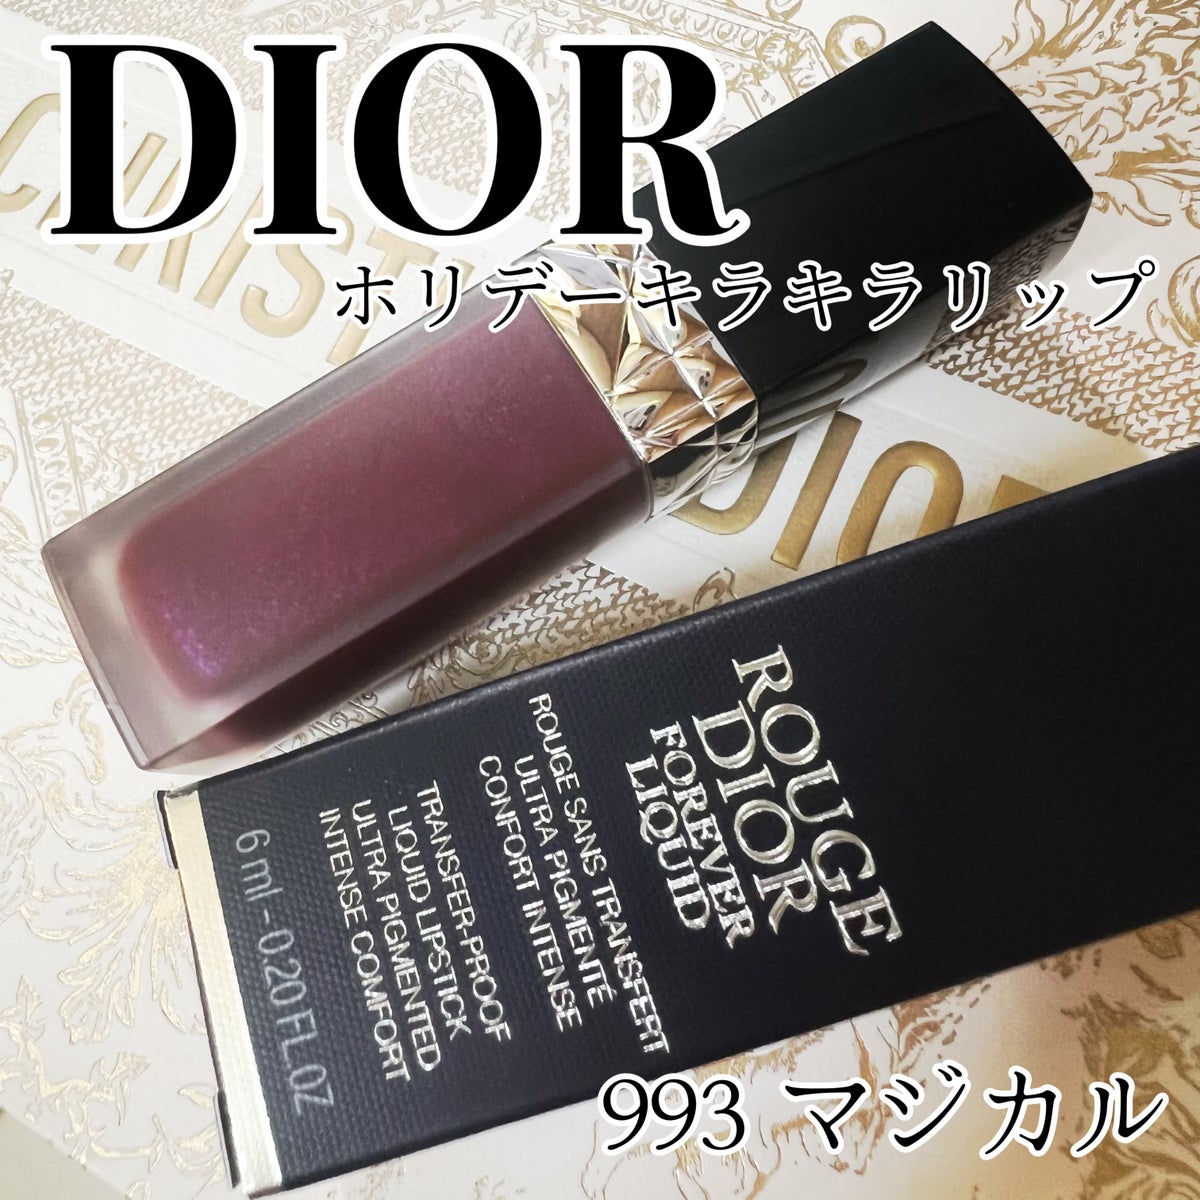 ディオール Dior ホリデー キラキラ リップ シークイン 993 マジカル-